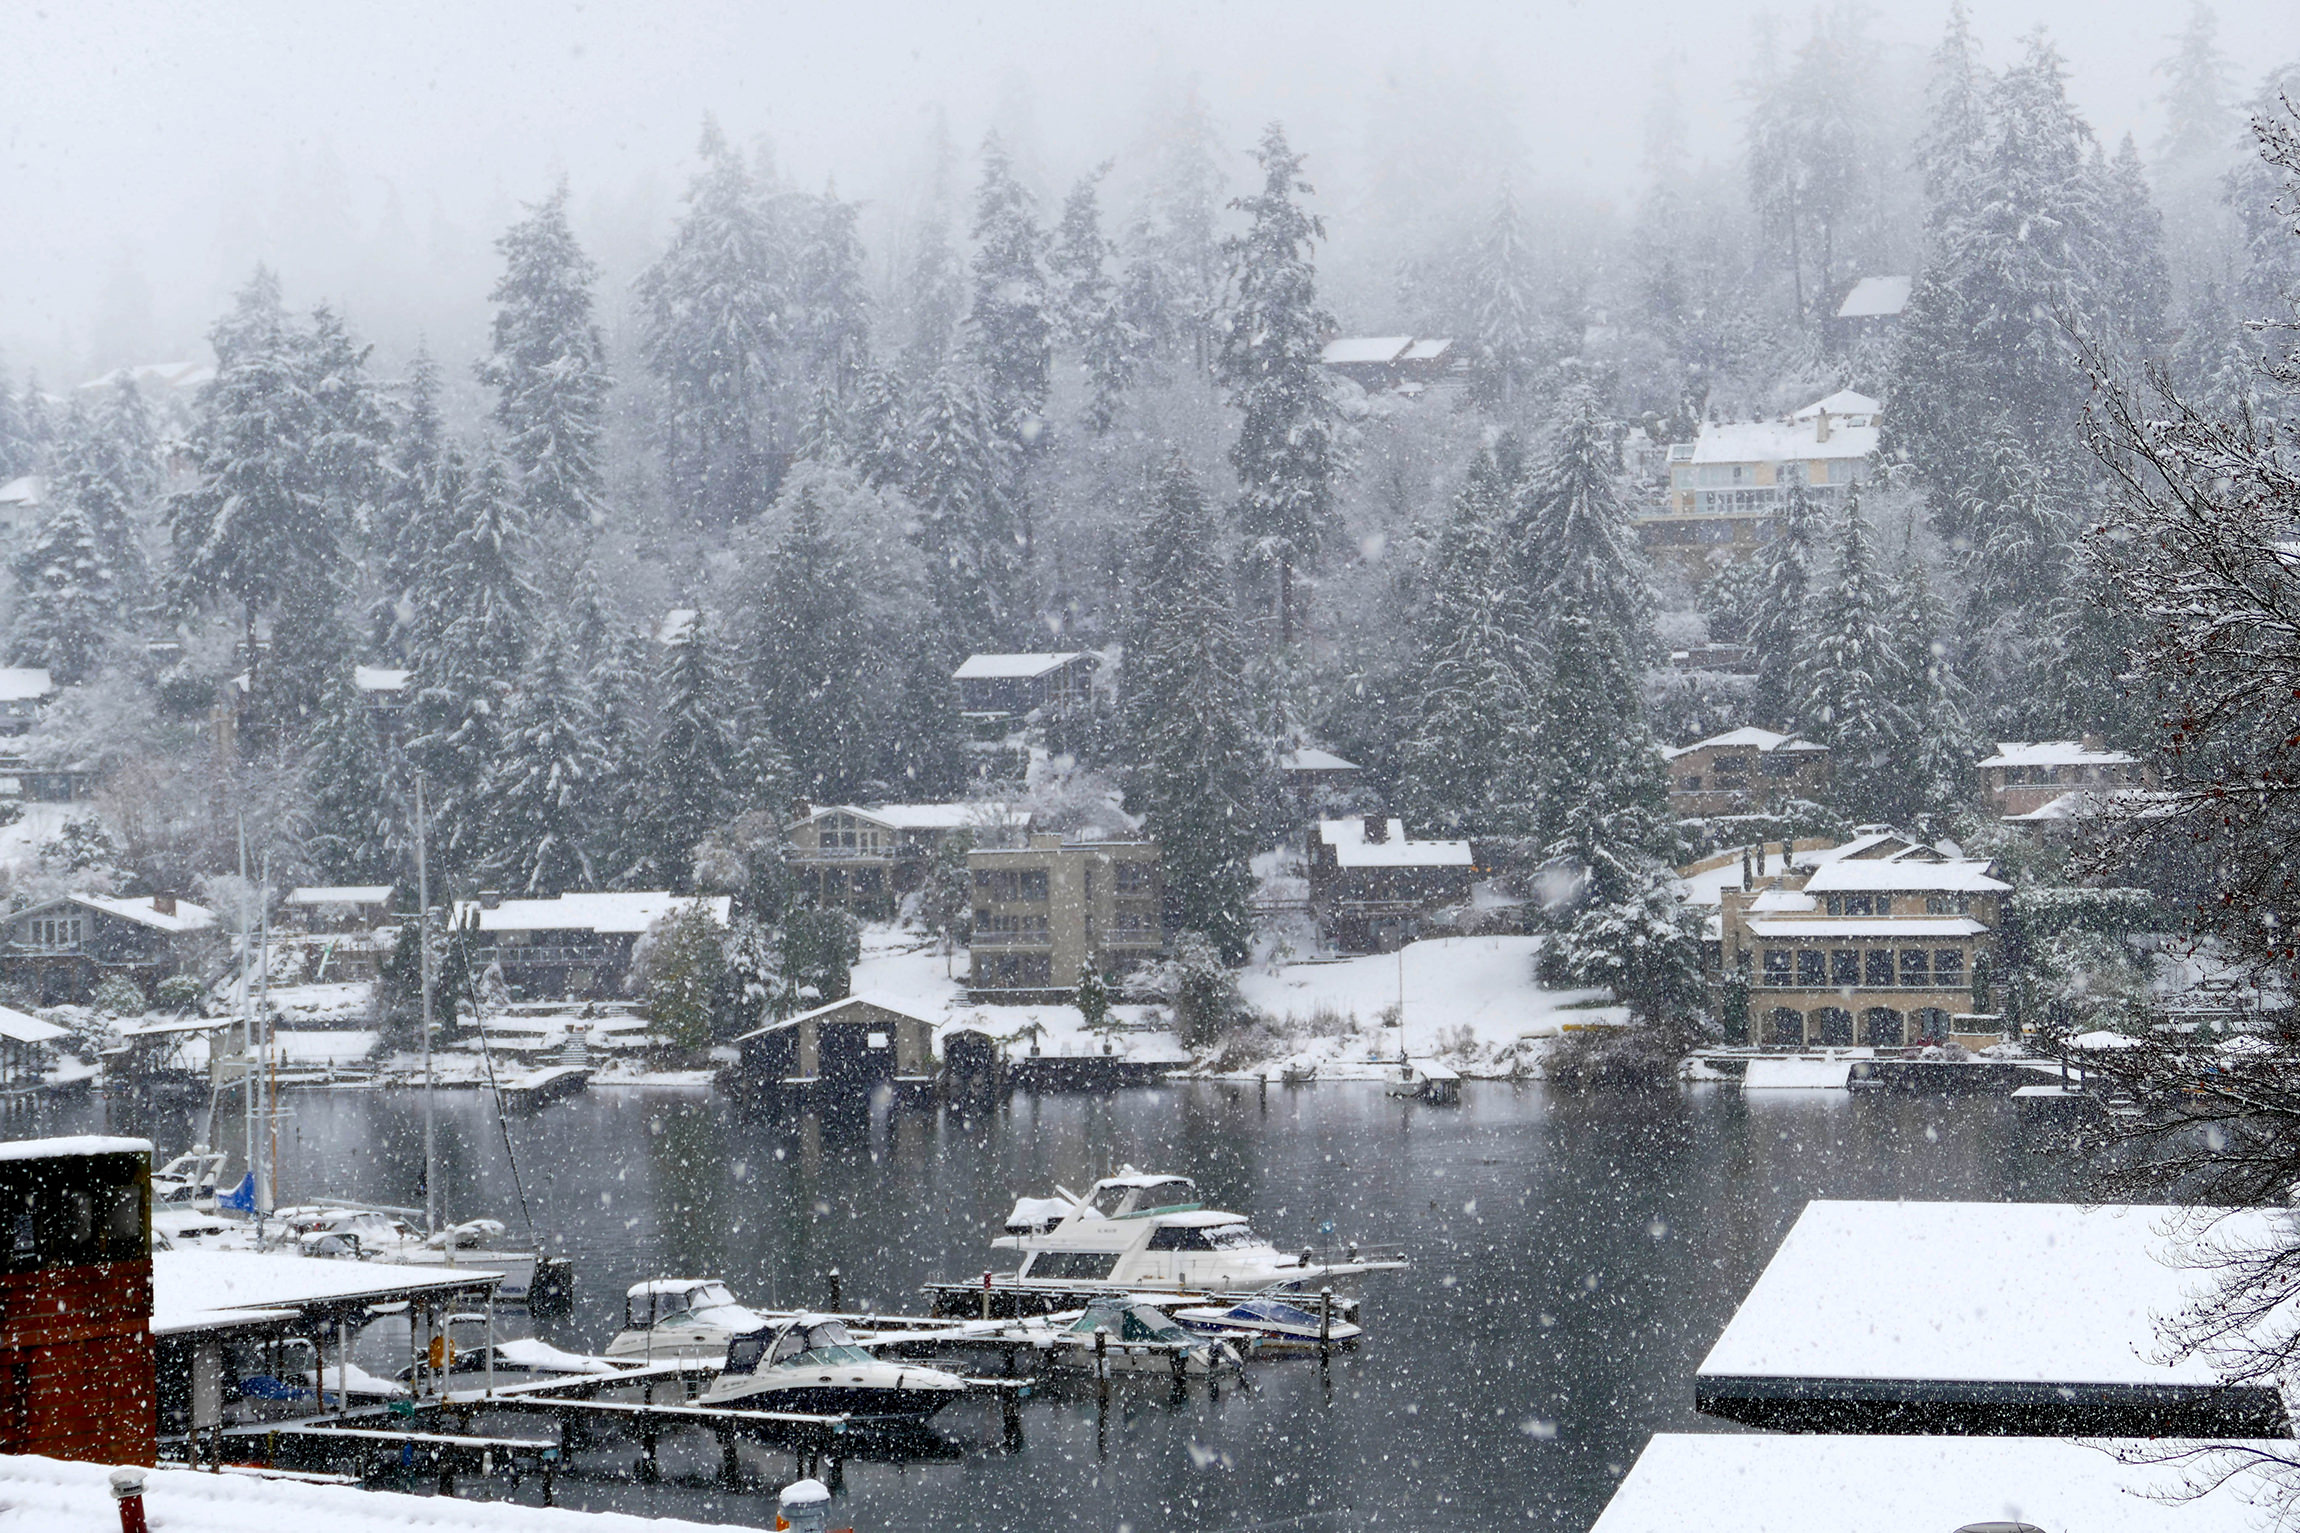 Snowing in Seattle - Katherine Chloe Cahoon F